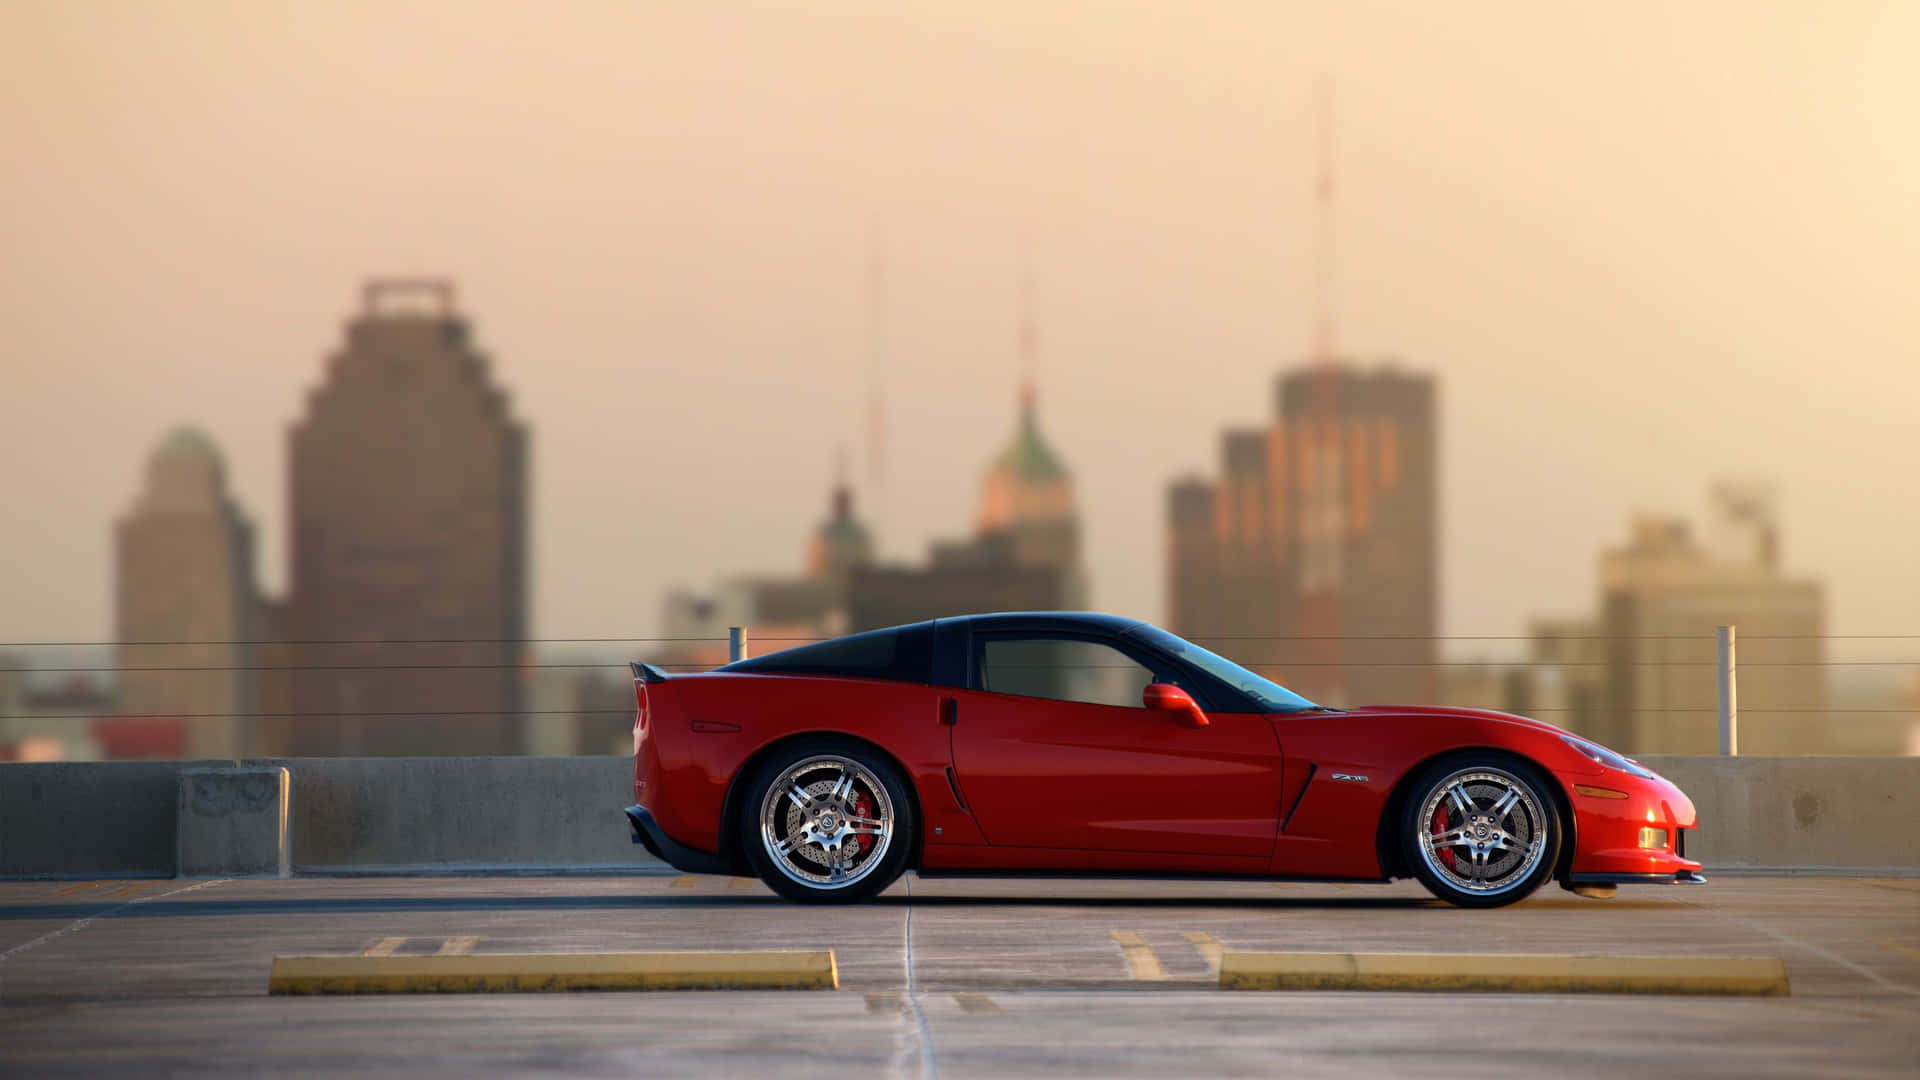 Endjupblå Corvette